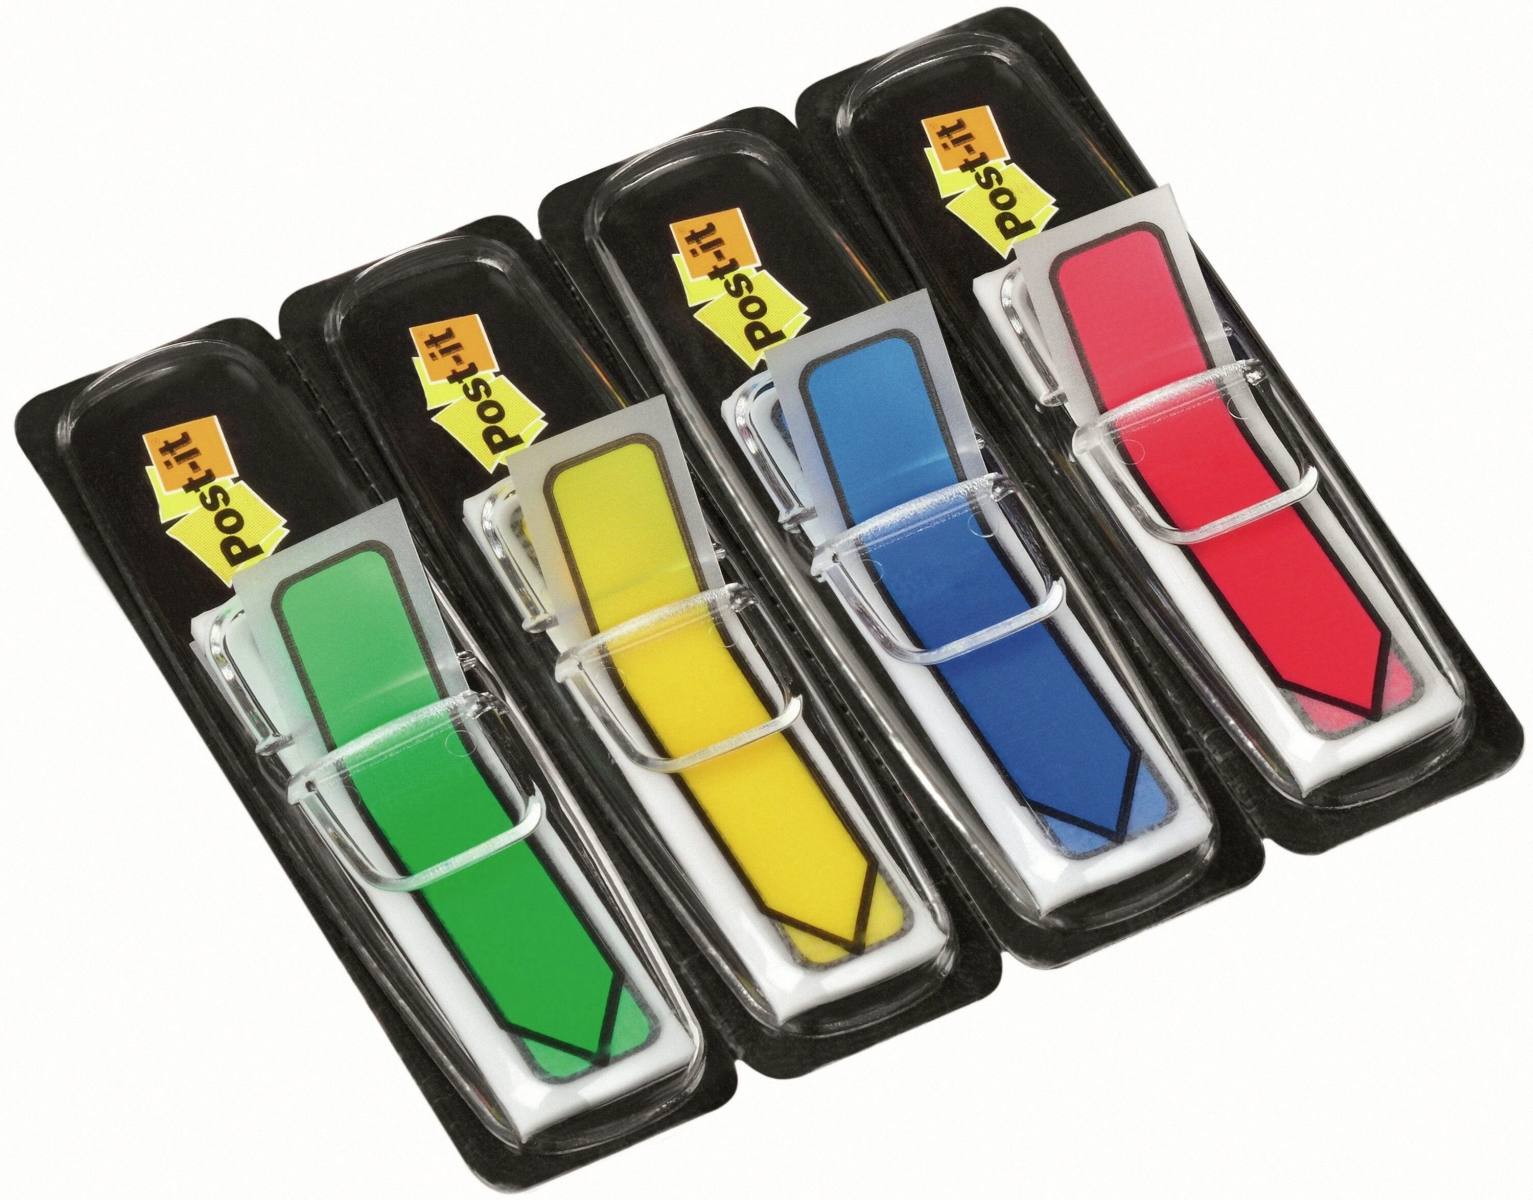 3M Post-it Index flèches 684ARR3, 11,9 mm x 43,2 mm, bleu, jaune, vert, rouge, 4 x 24 bandes adhésives en distributeur